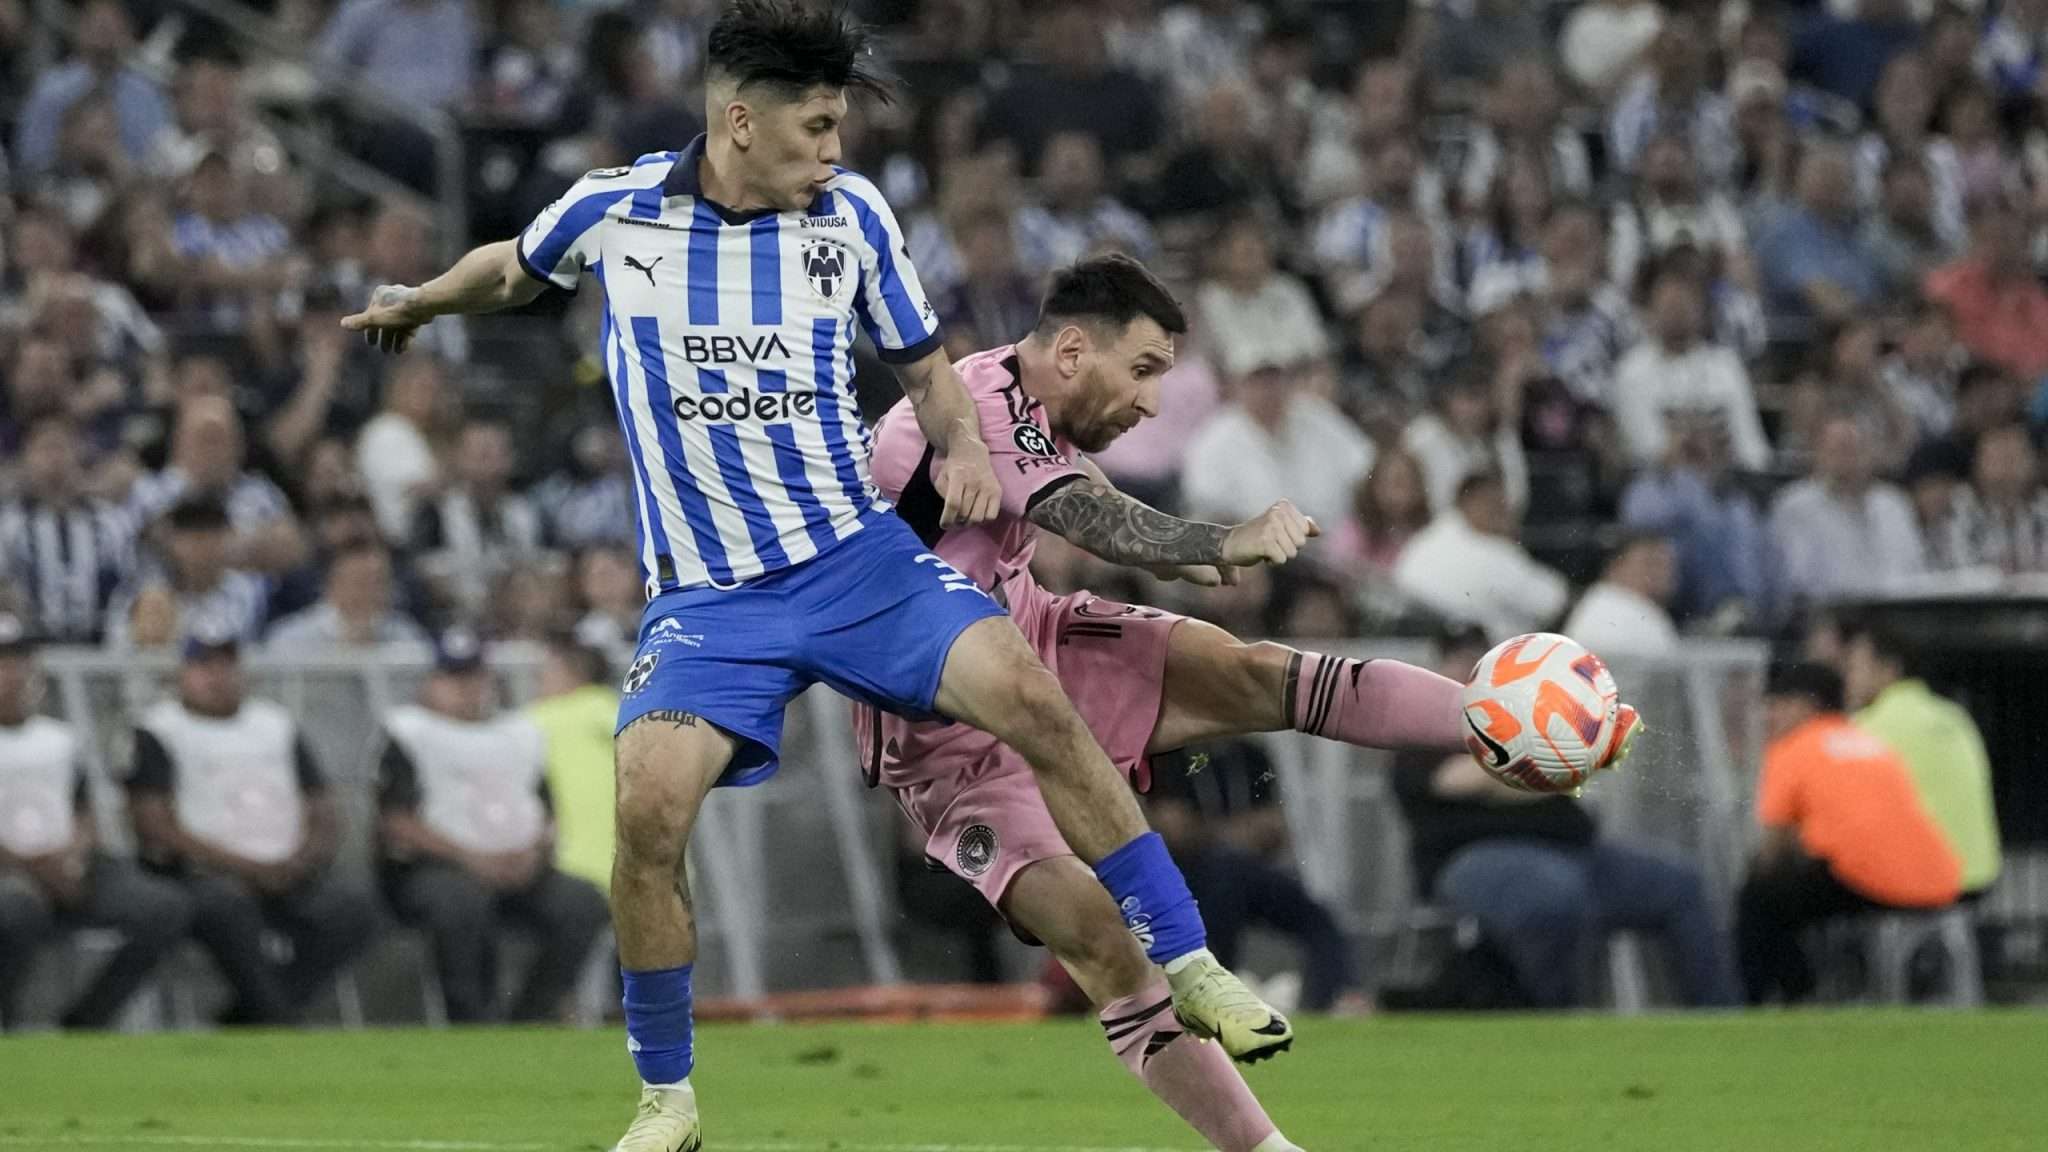 Debut y despedida! Messi es eliminado en su primer partido oficial en México tras goleada de Rayados